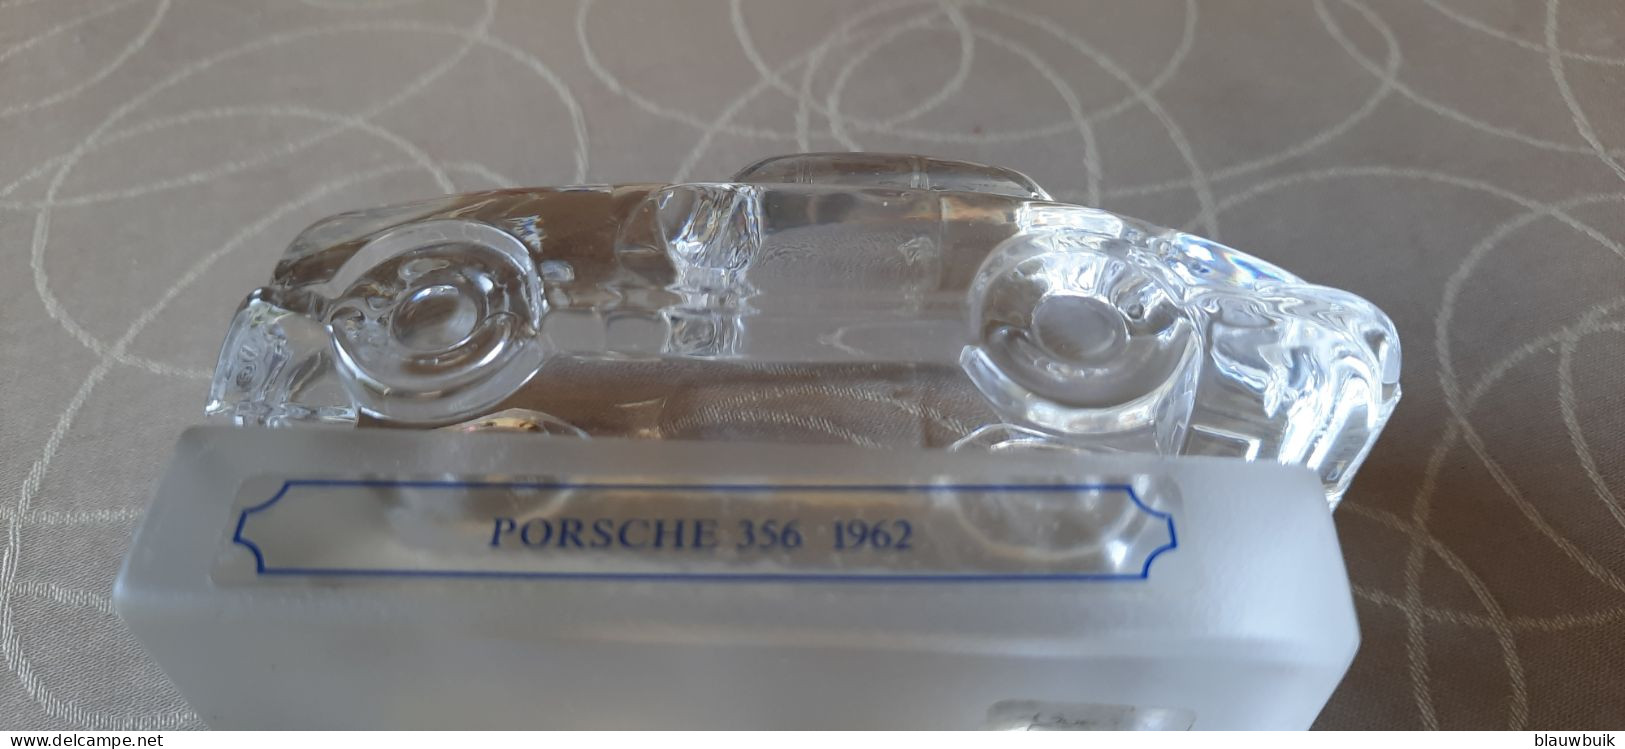 Goebel kristal Porsche 356 1962 + boek Porsche , een legende die voortduurt